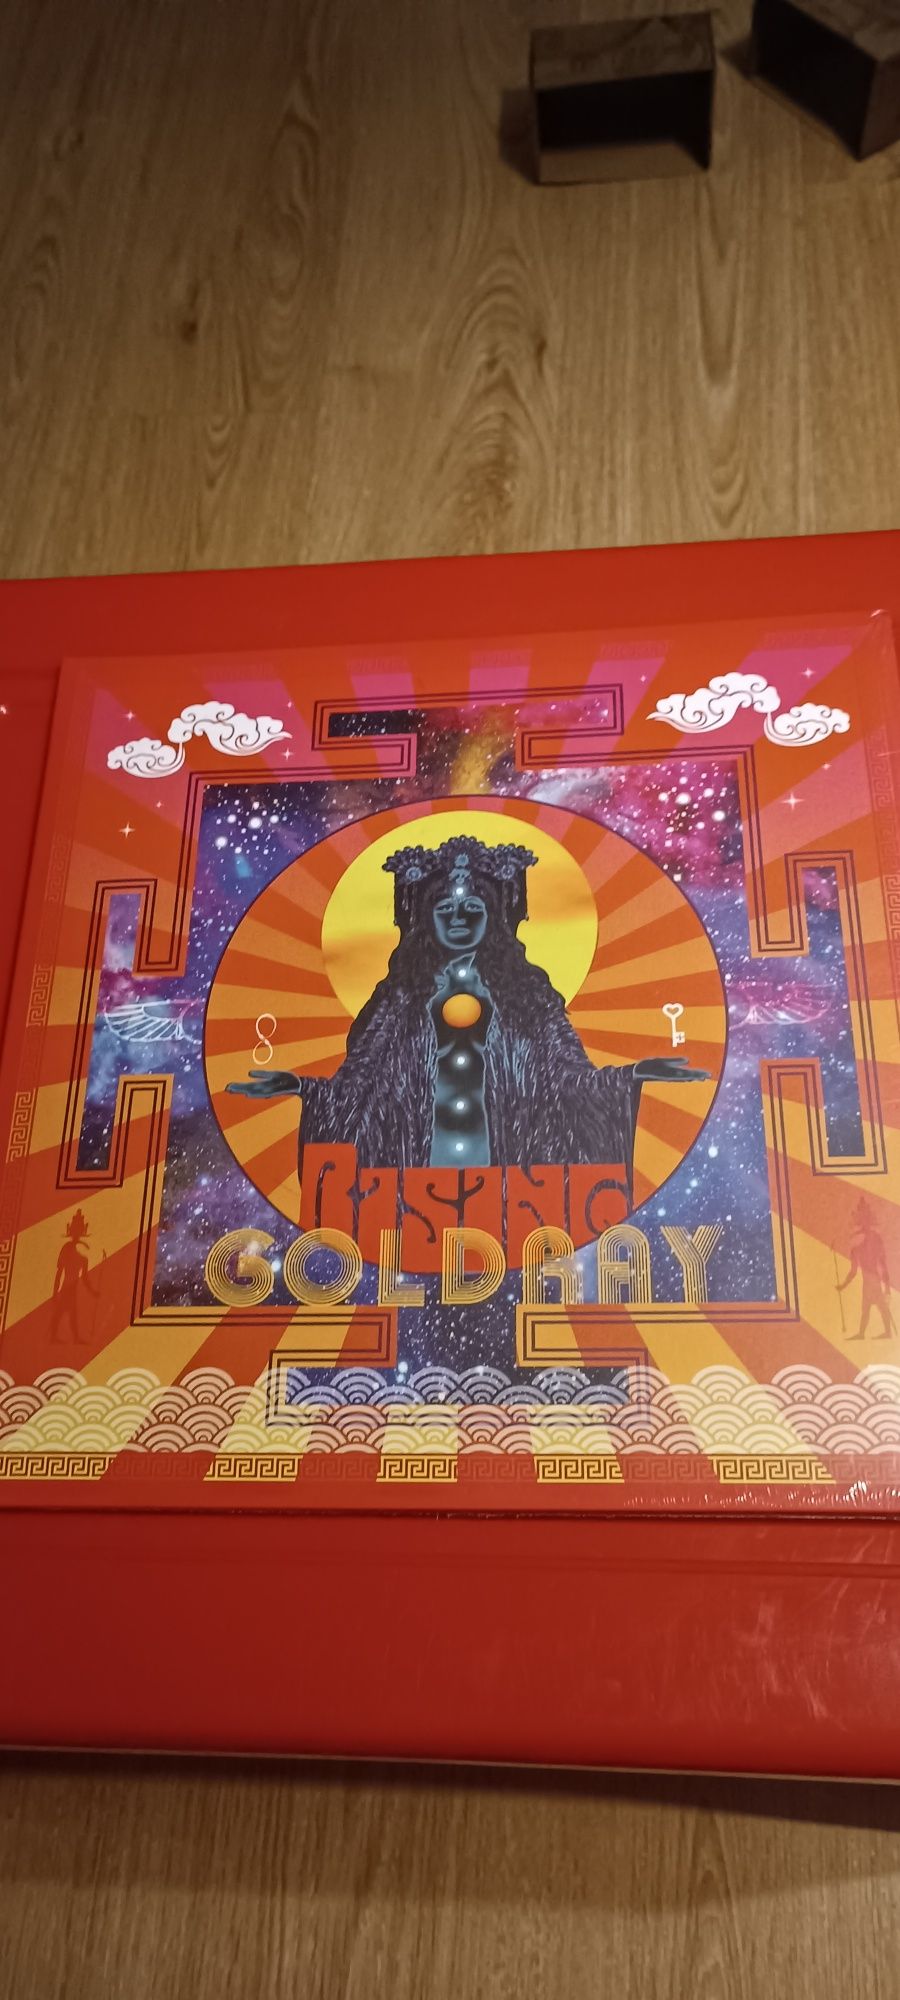 Płyta winylowa Goldray Rising mi
Goldray